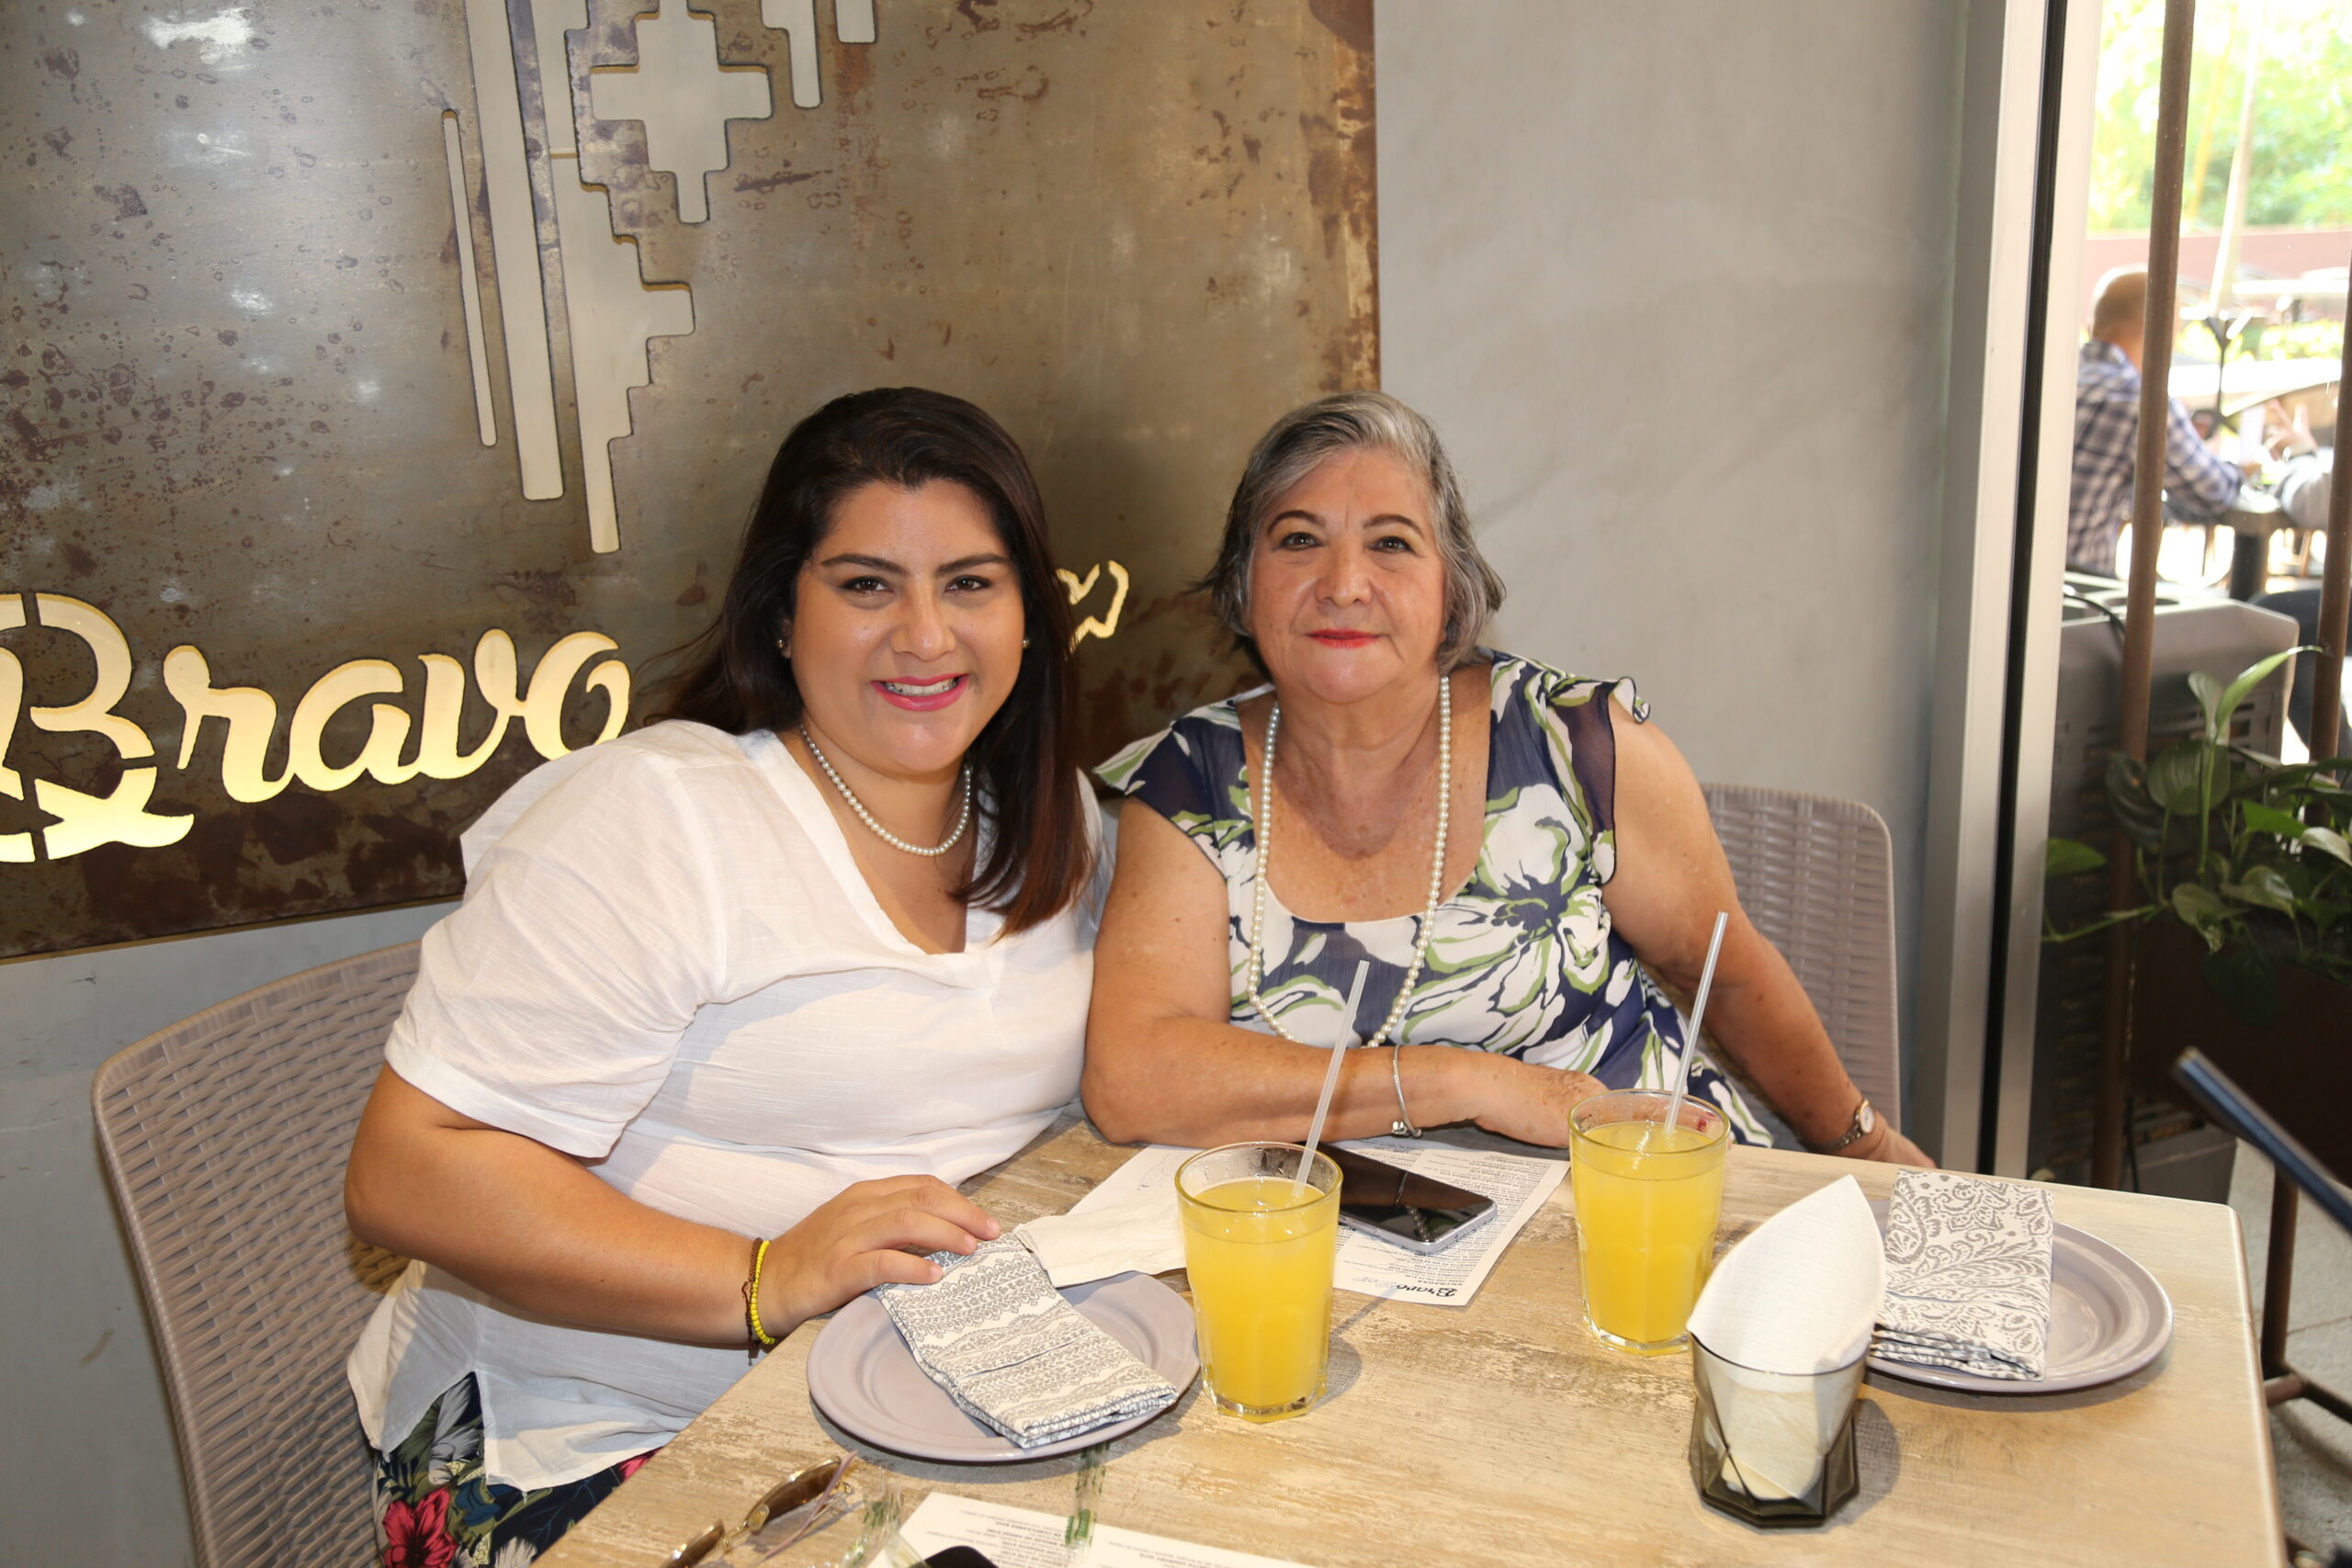 Así fue la celebración del 10 de mayo en los mejores restaurantes de Villahermosa Los mejores lugares consintieron a las madres, por que las mamás se merecen lo mejor. https://larevistadelsureste.com